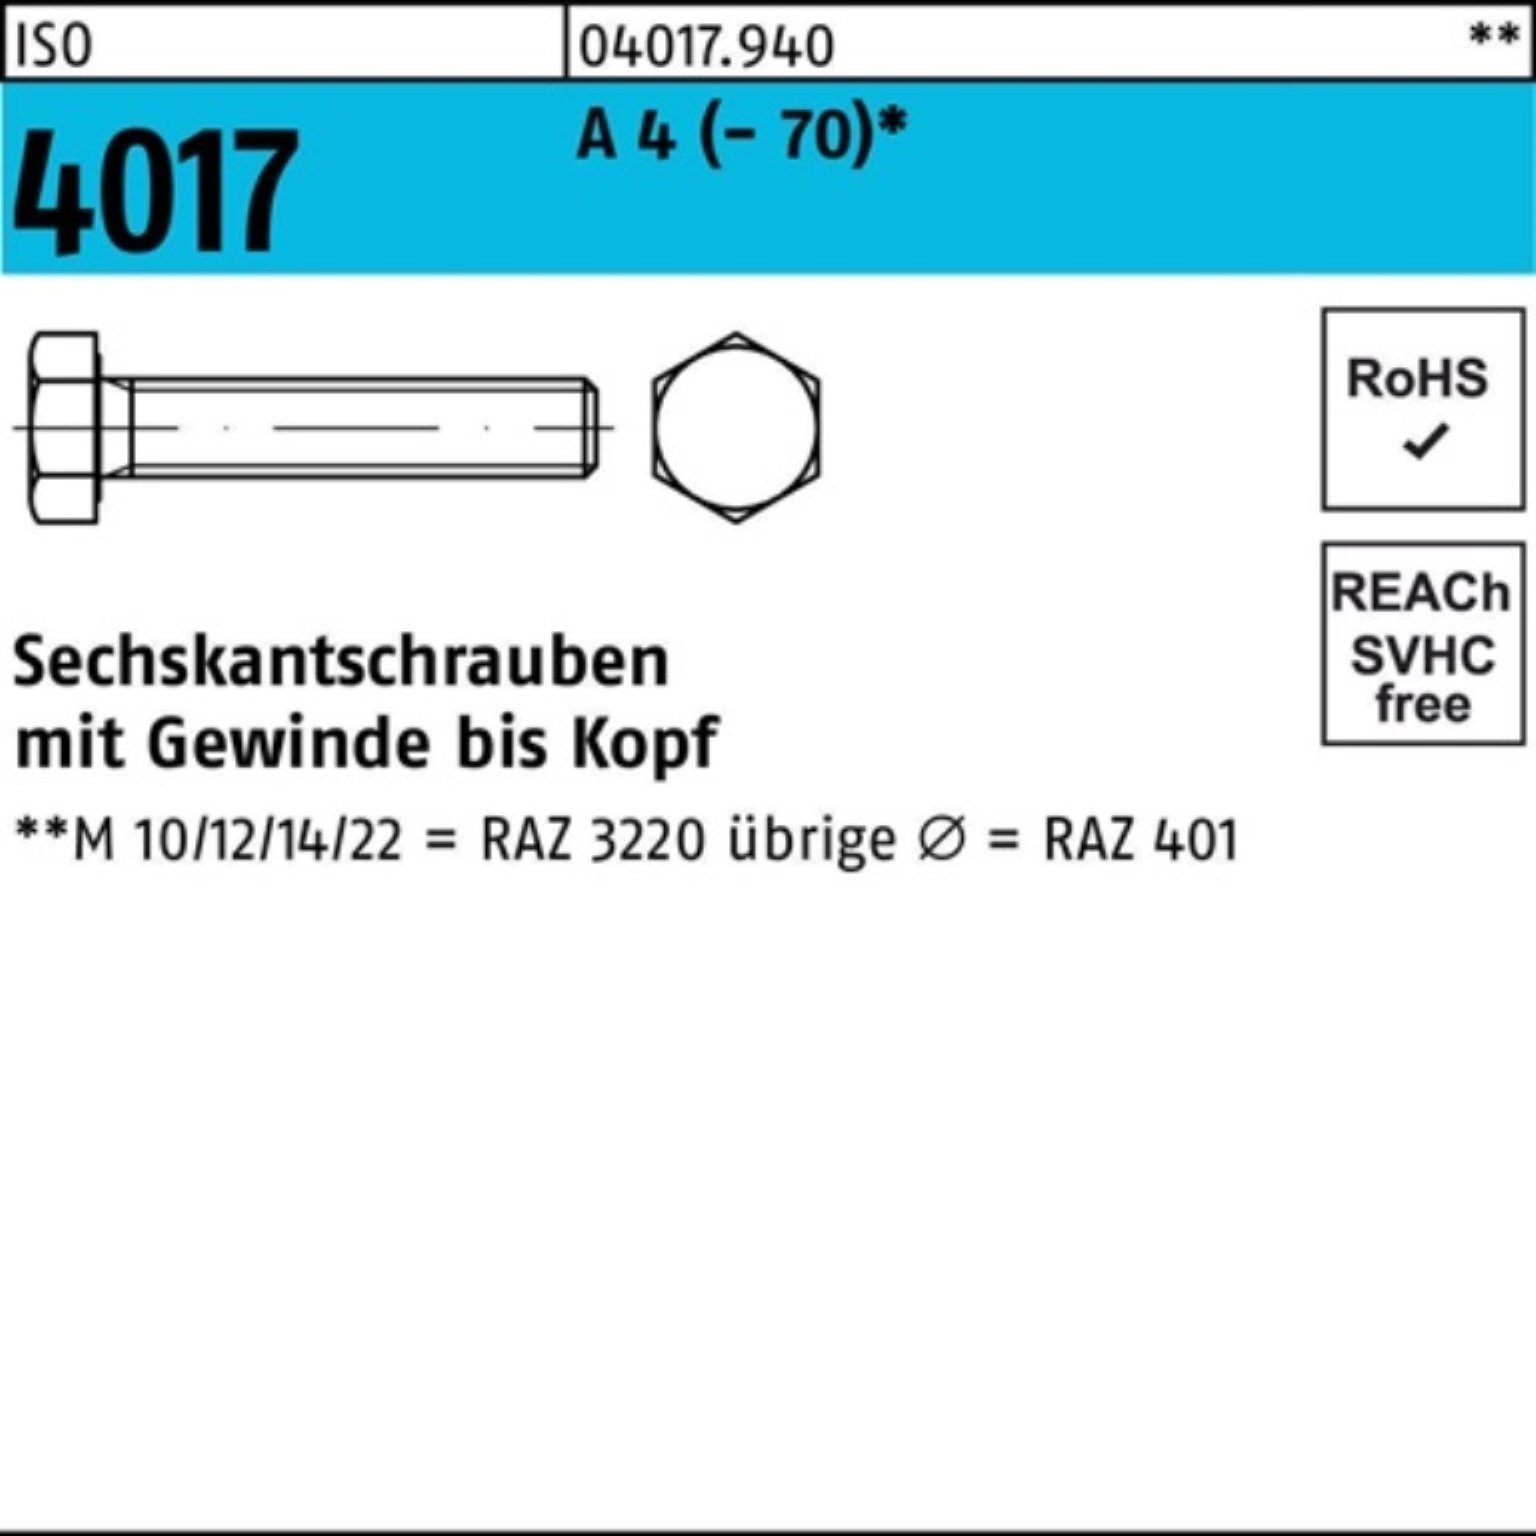 Bufab Sechskantschraube 100er Pack Sechskantschraube ISO 4017 VG M12x 20 A 4 (70) 100 Stück